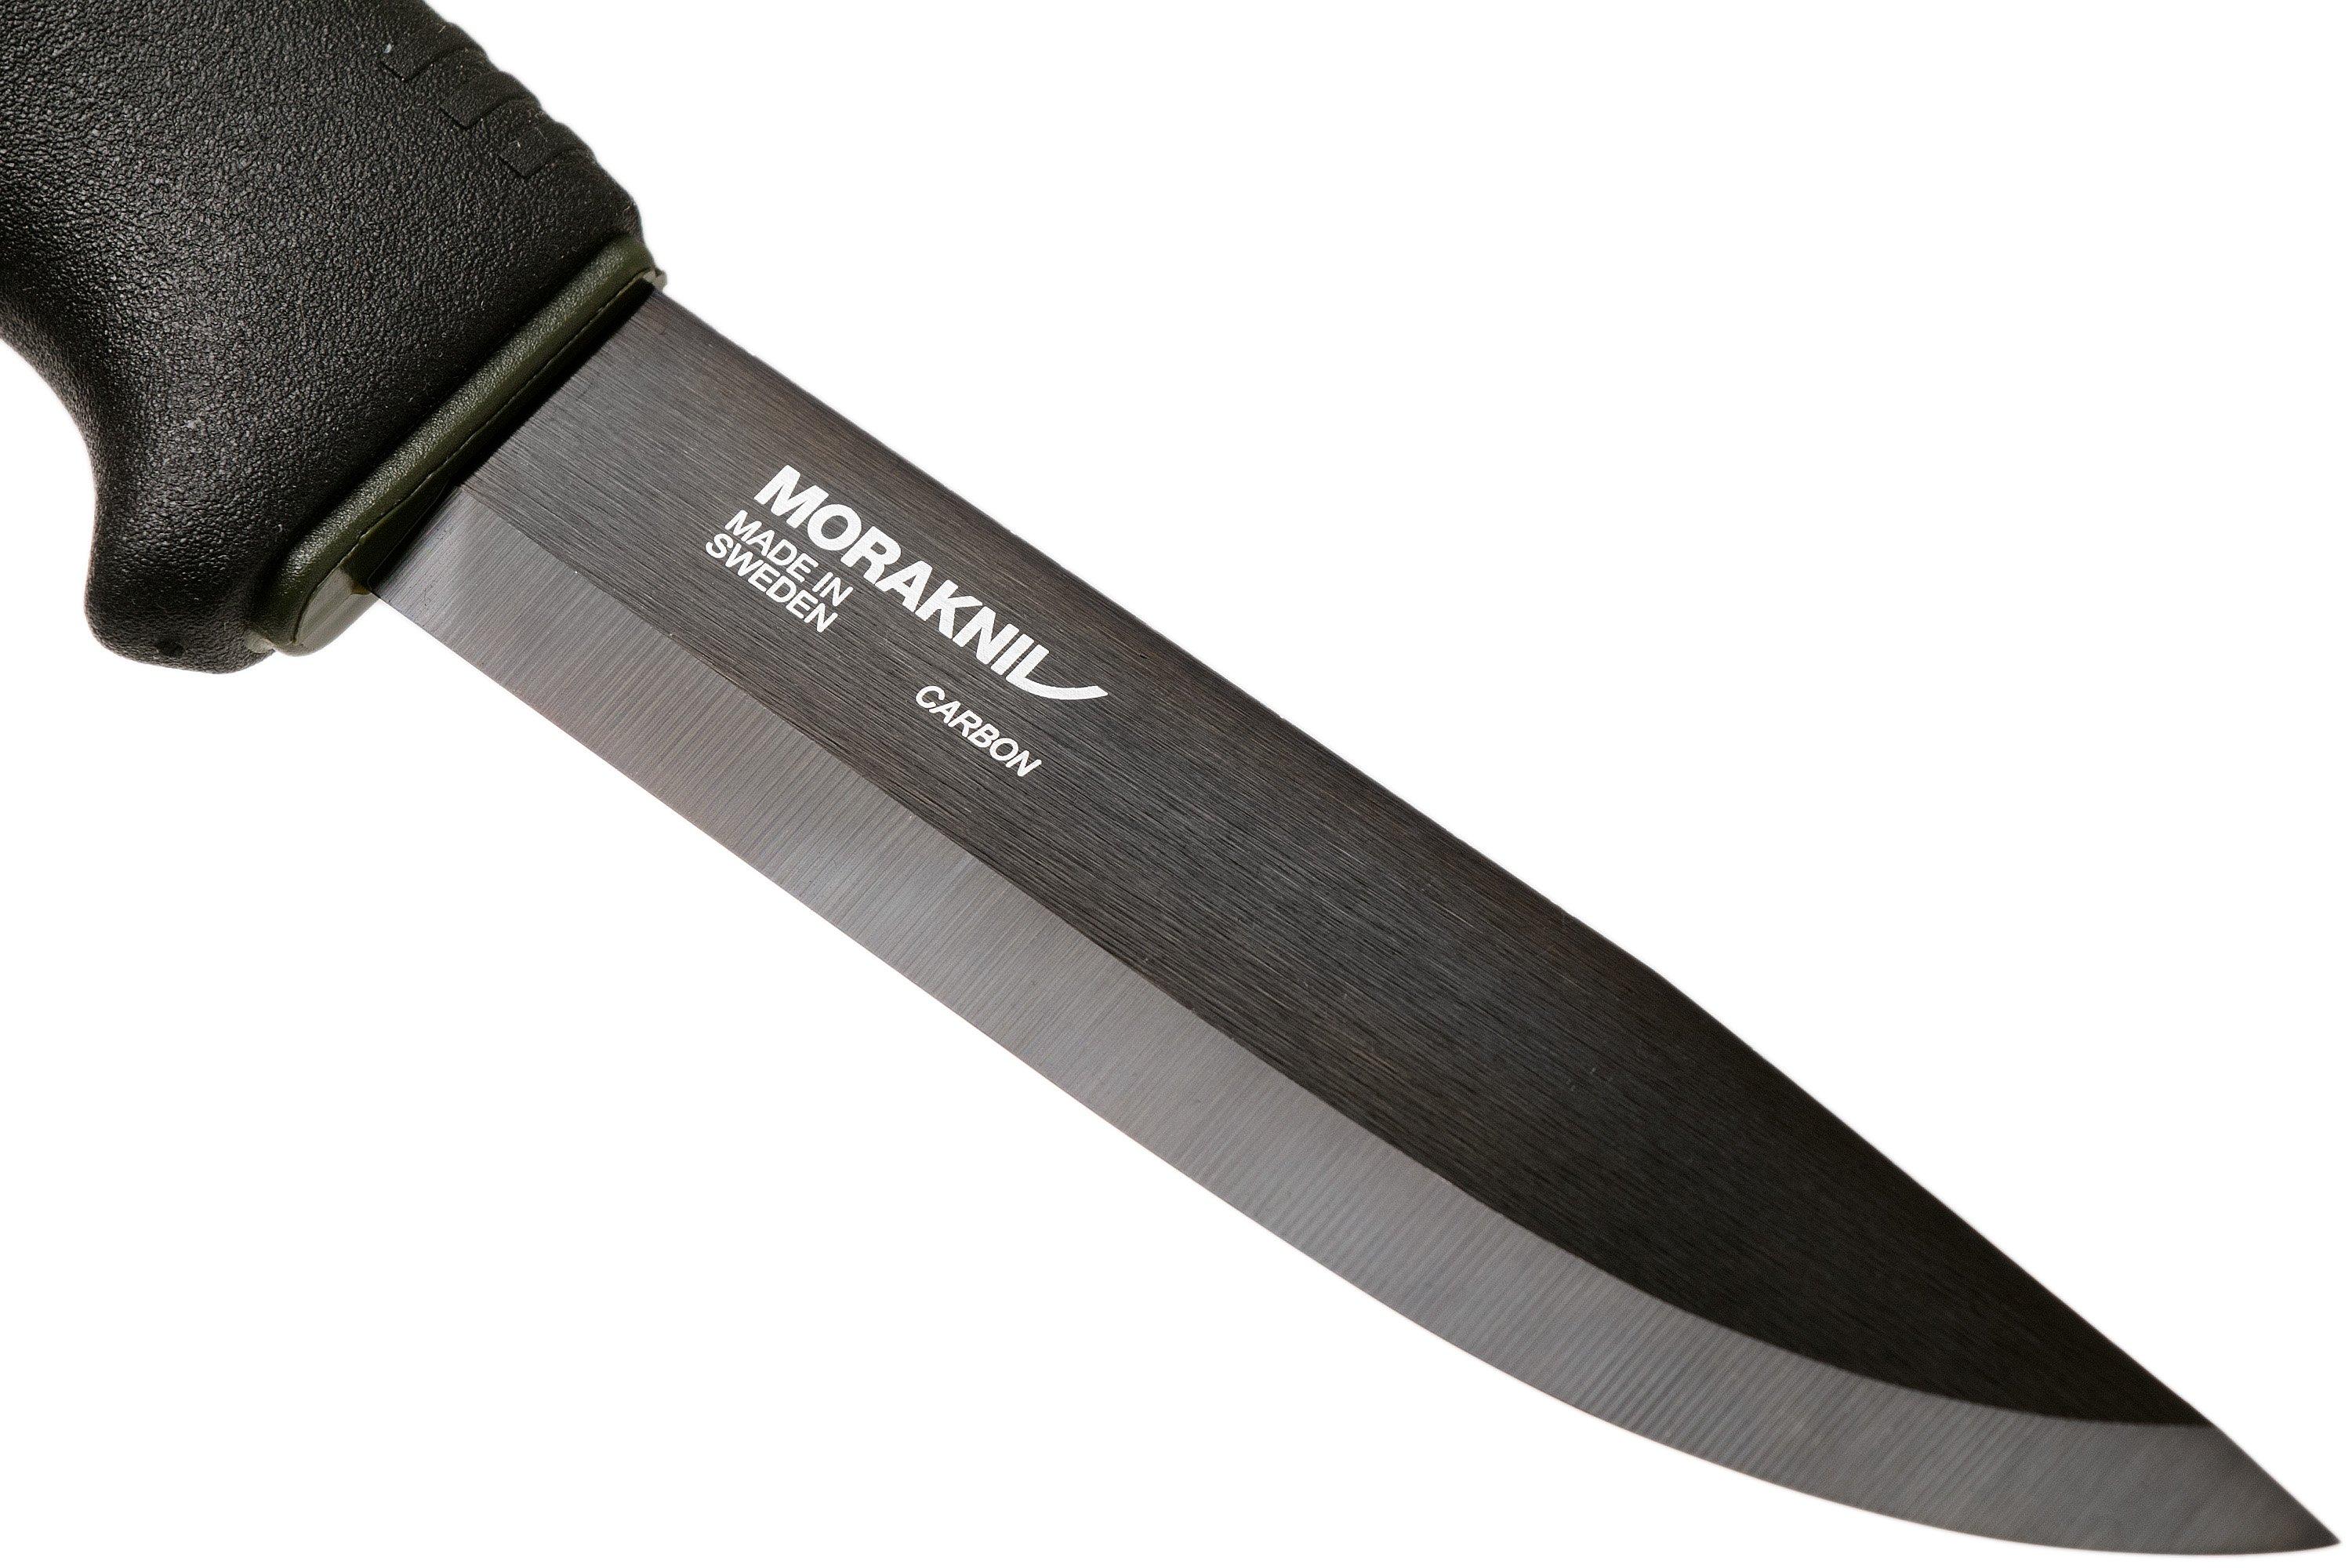 Mora Bushcraft Survival, Black Carbon Steel, Ultimate Outdoor Knife